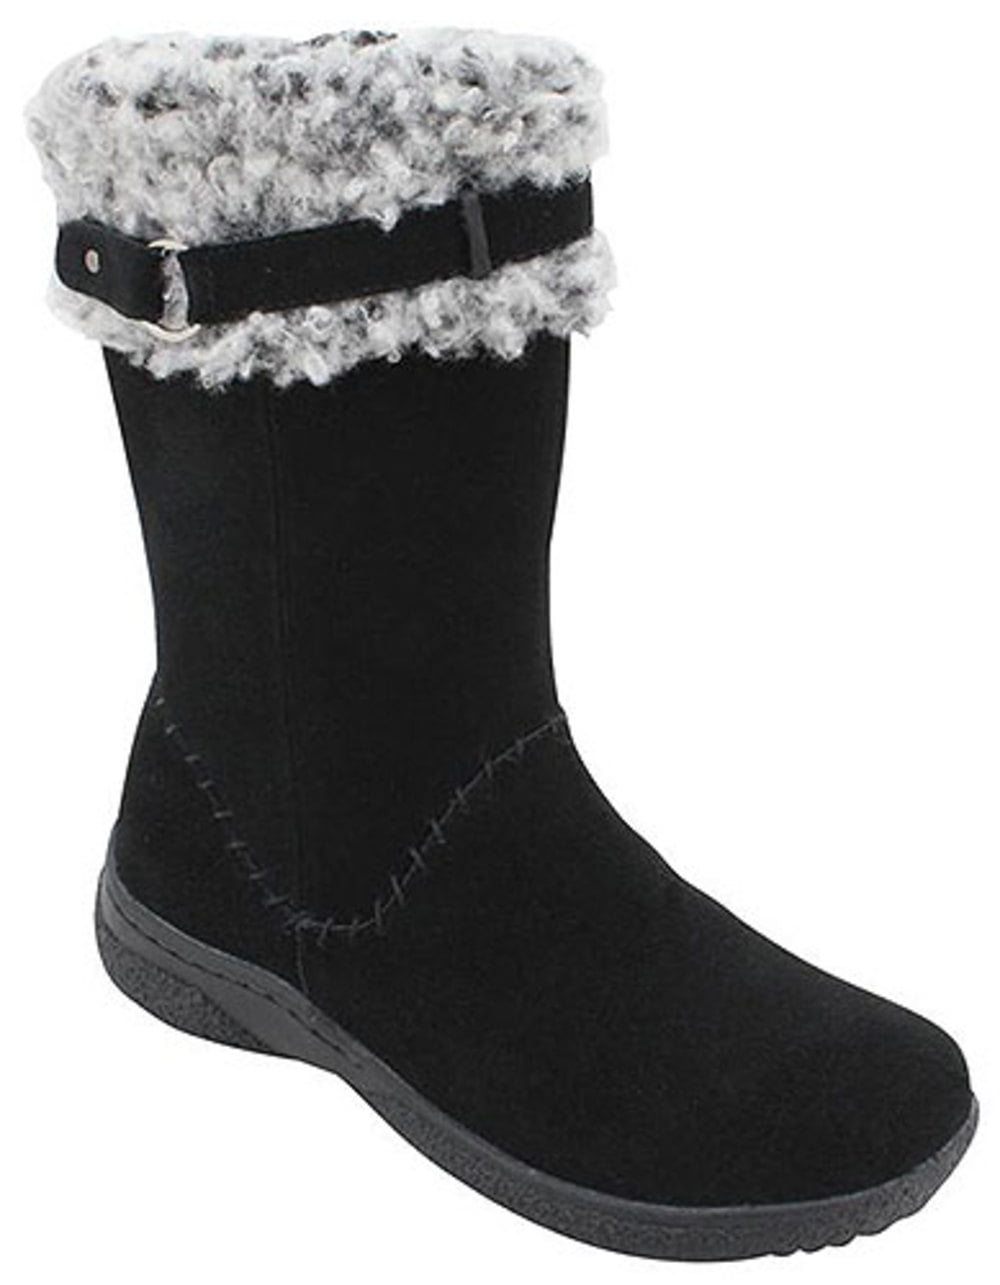 Women's Propet NORTHSTAR Winter Boots BLACK 9.5 D - Walmart.com